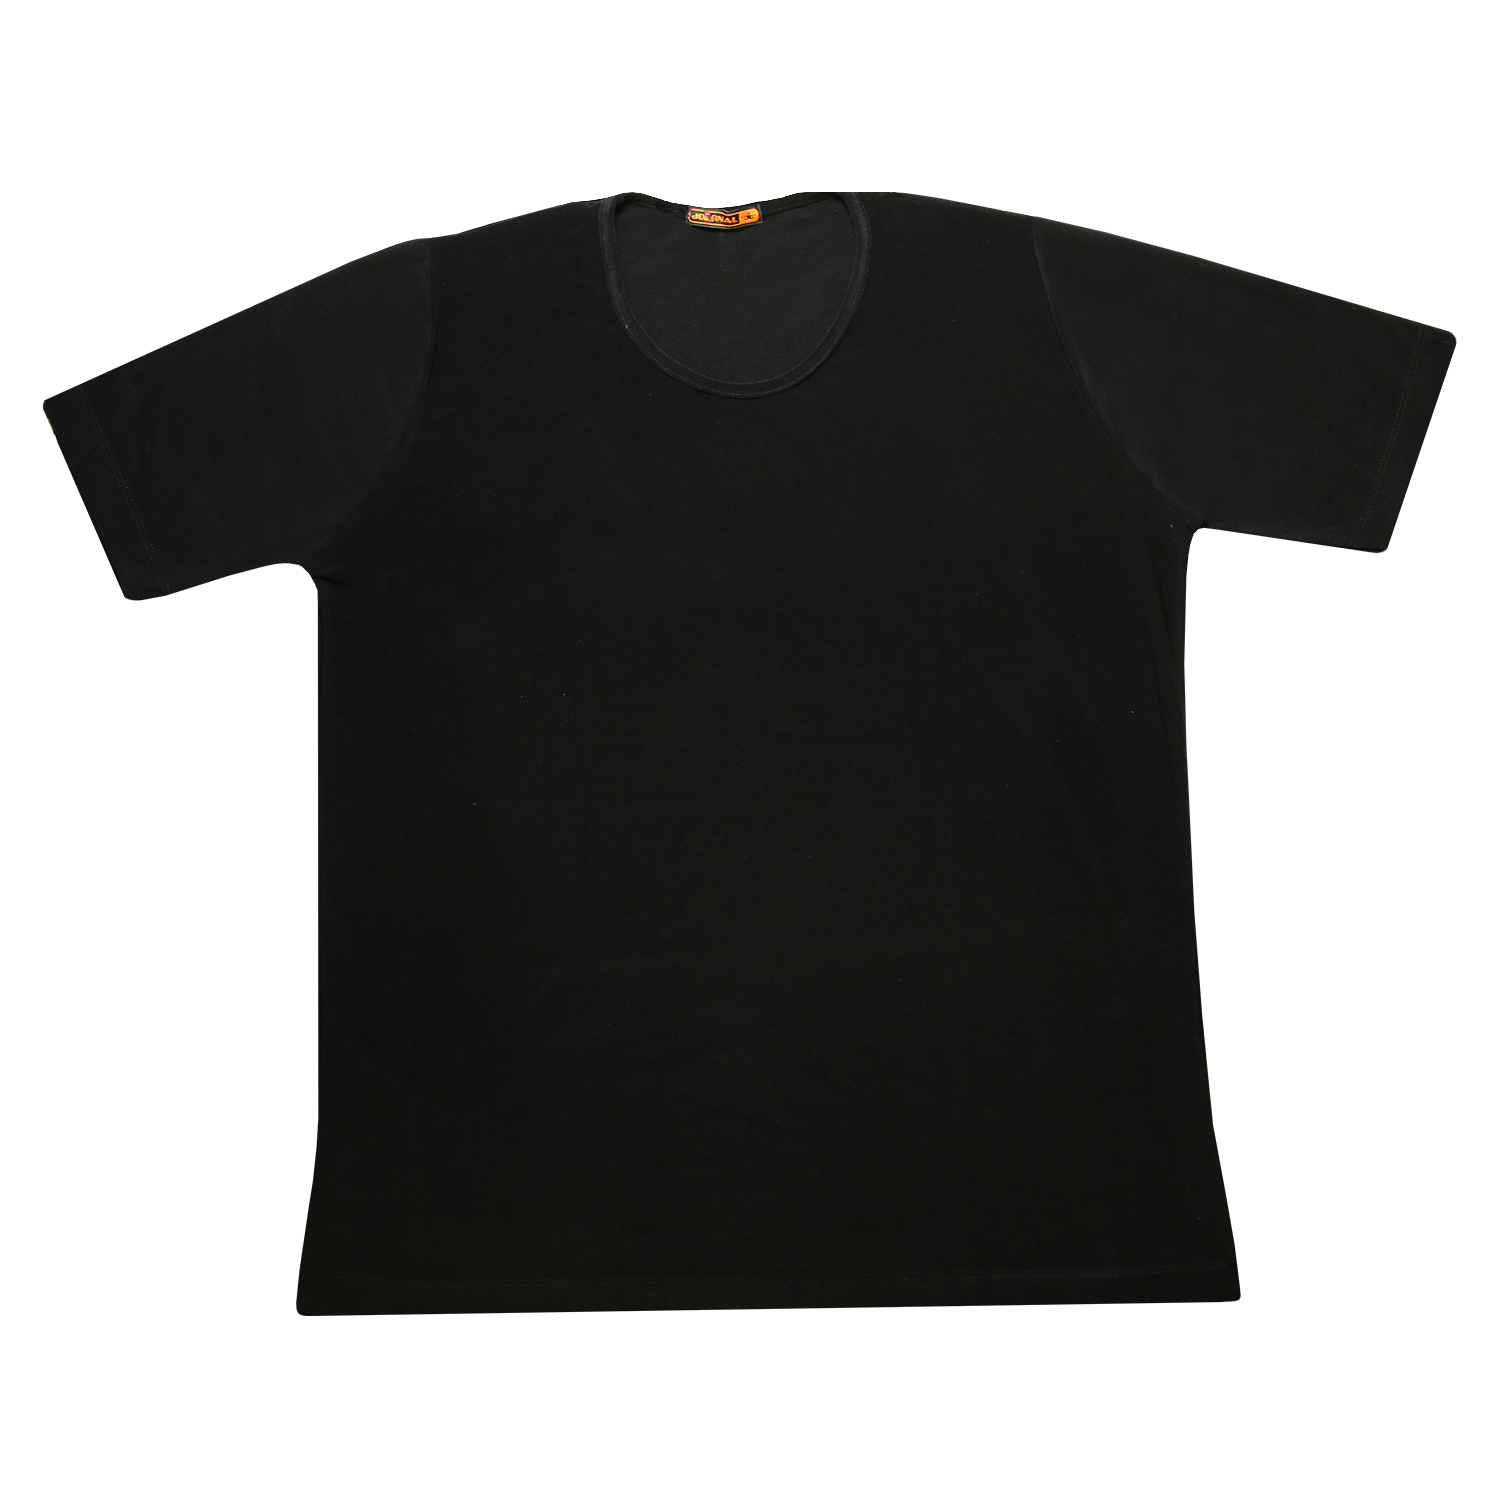 تی شرت زنانه کد 21703 رنگ مشکی